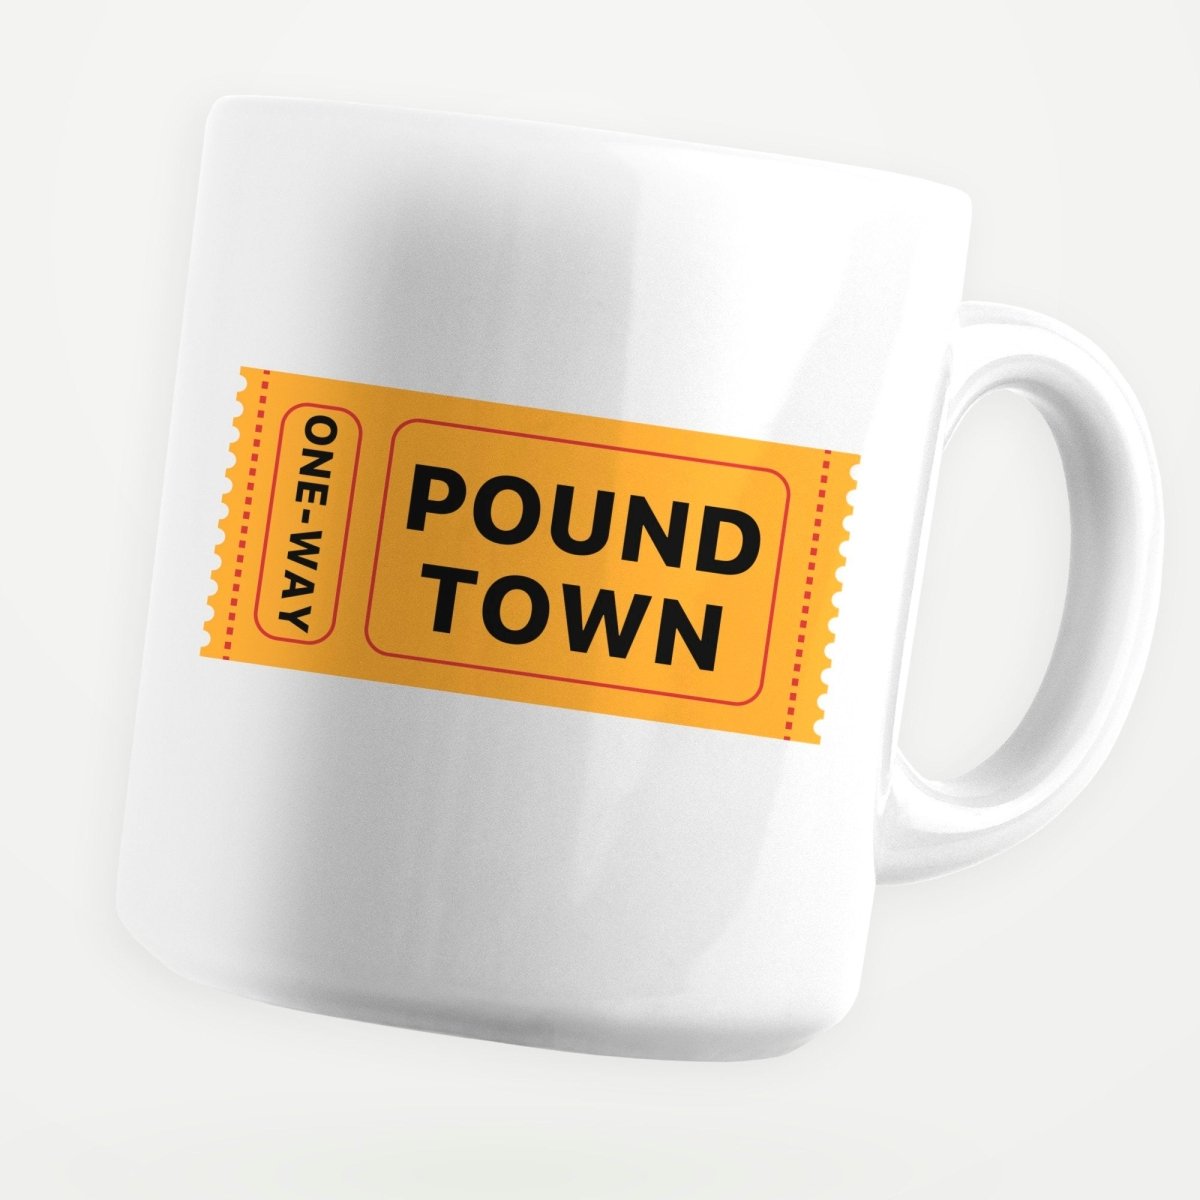 Pound Town Yellow 11oz Coffee Mug - stickerbullPound Town Yellow 11oz Coffee MugMugsstickerbullstickerbullMug_PoundTown2Pound Town Yellow 11oz Coffee Mug